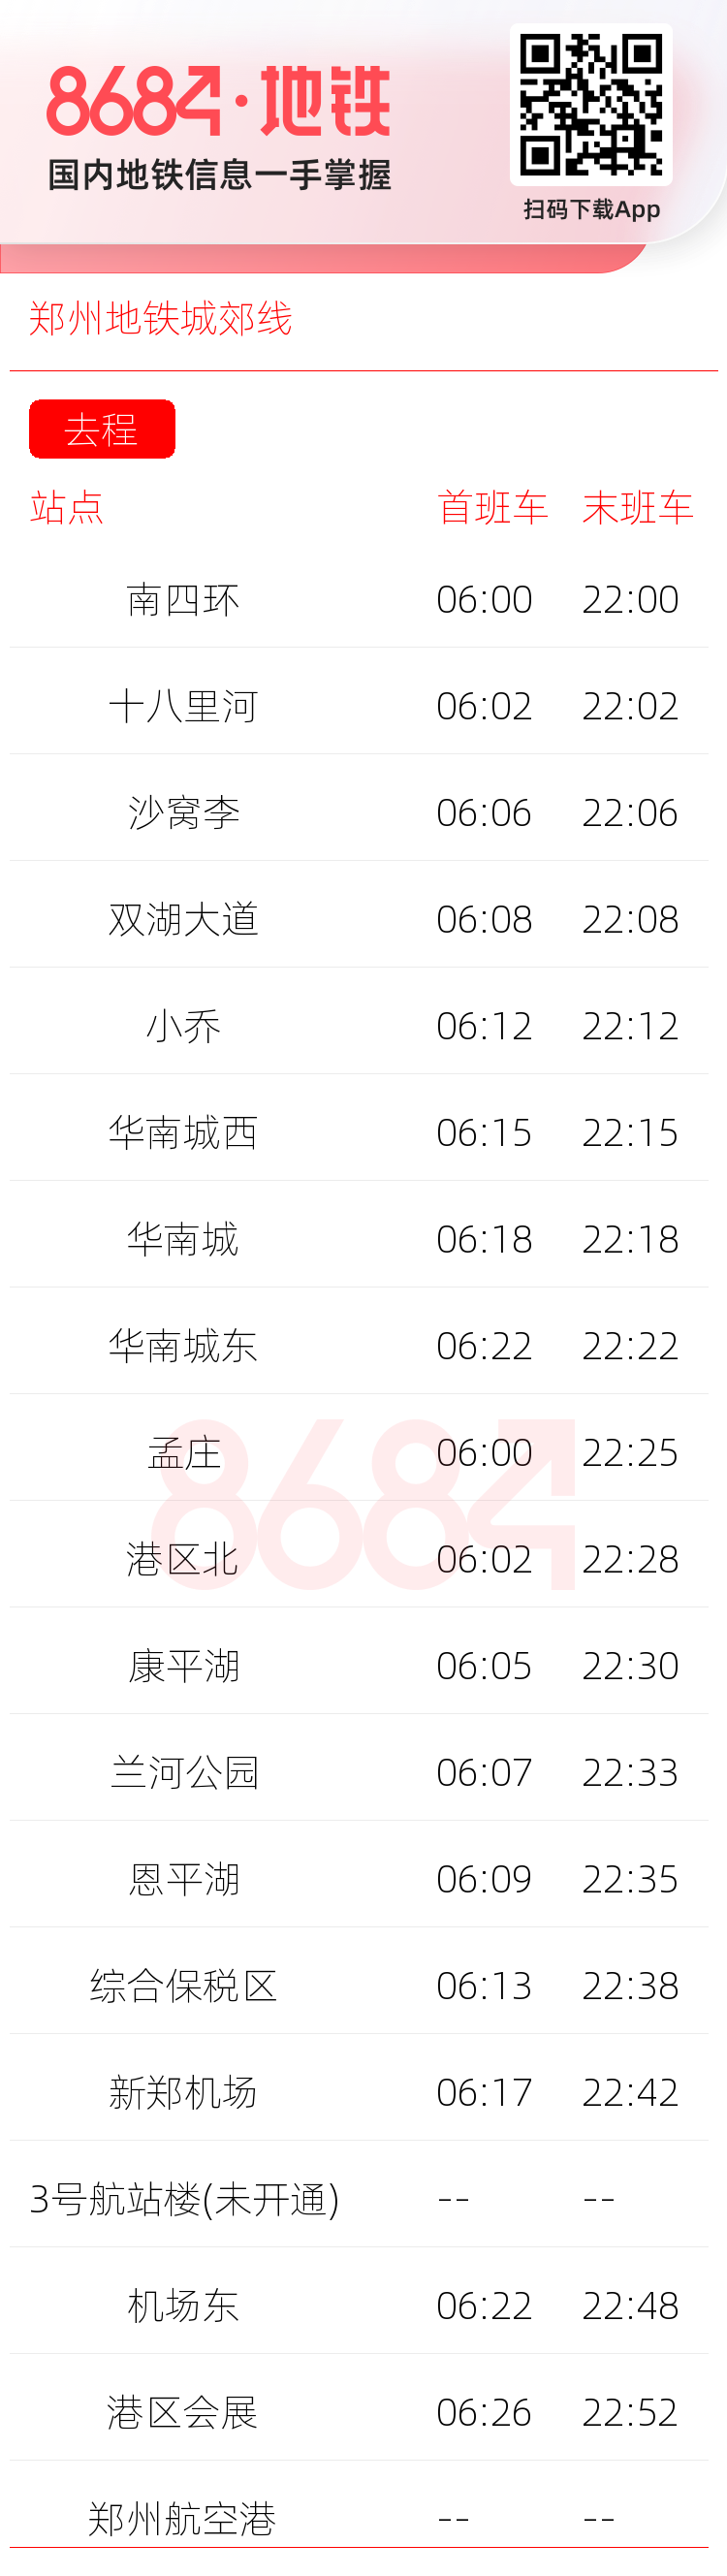 郑州地铁城郊线运营时间表